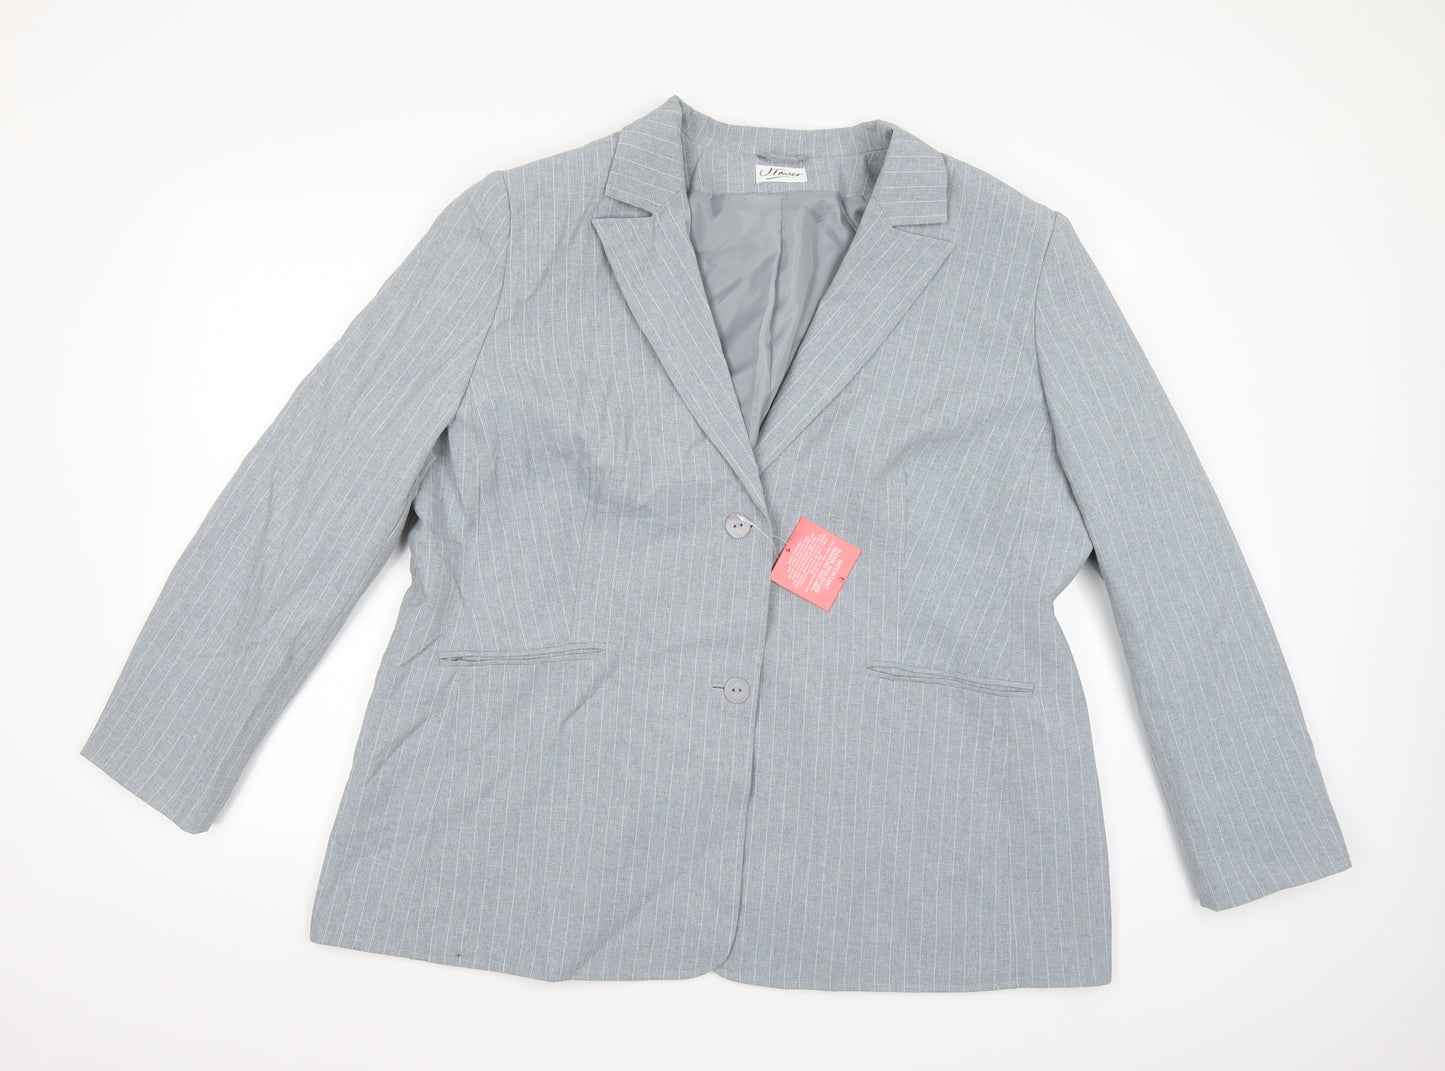 J Frazer Womens Grey Striped Rayon Jacket Blazer Size 22